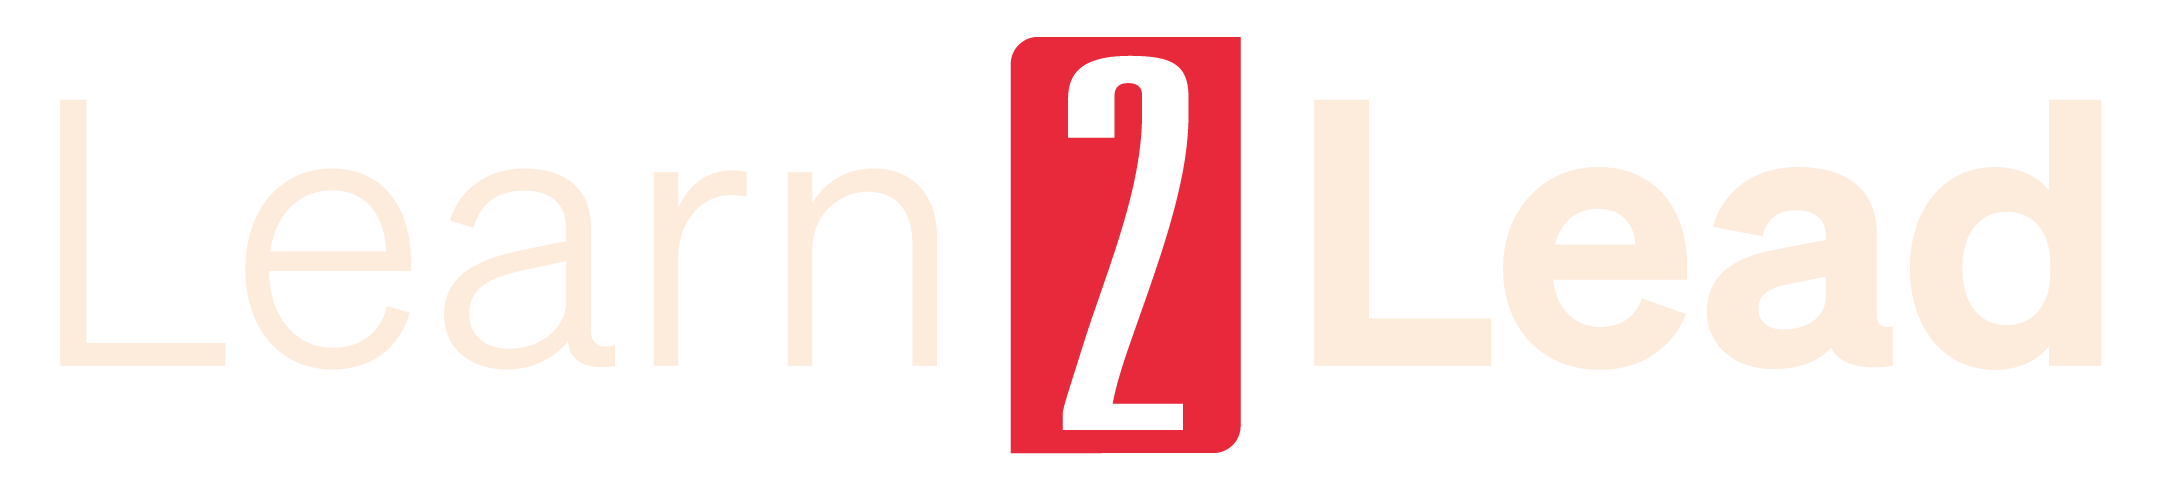 logo-learn-2-lead